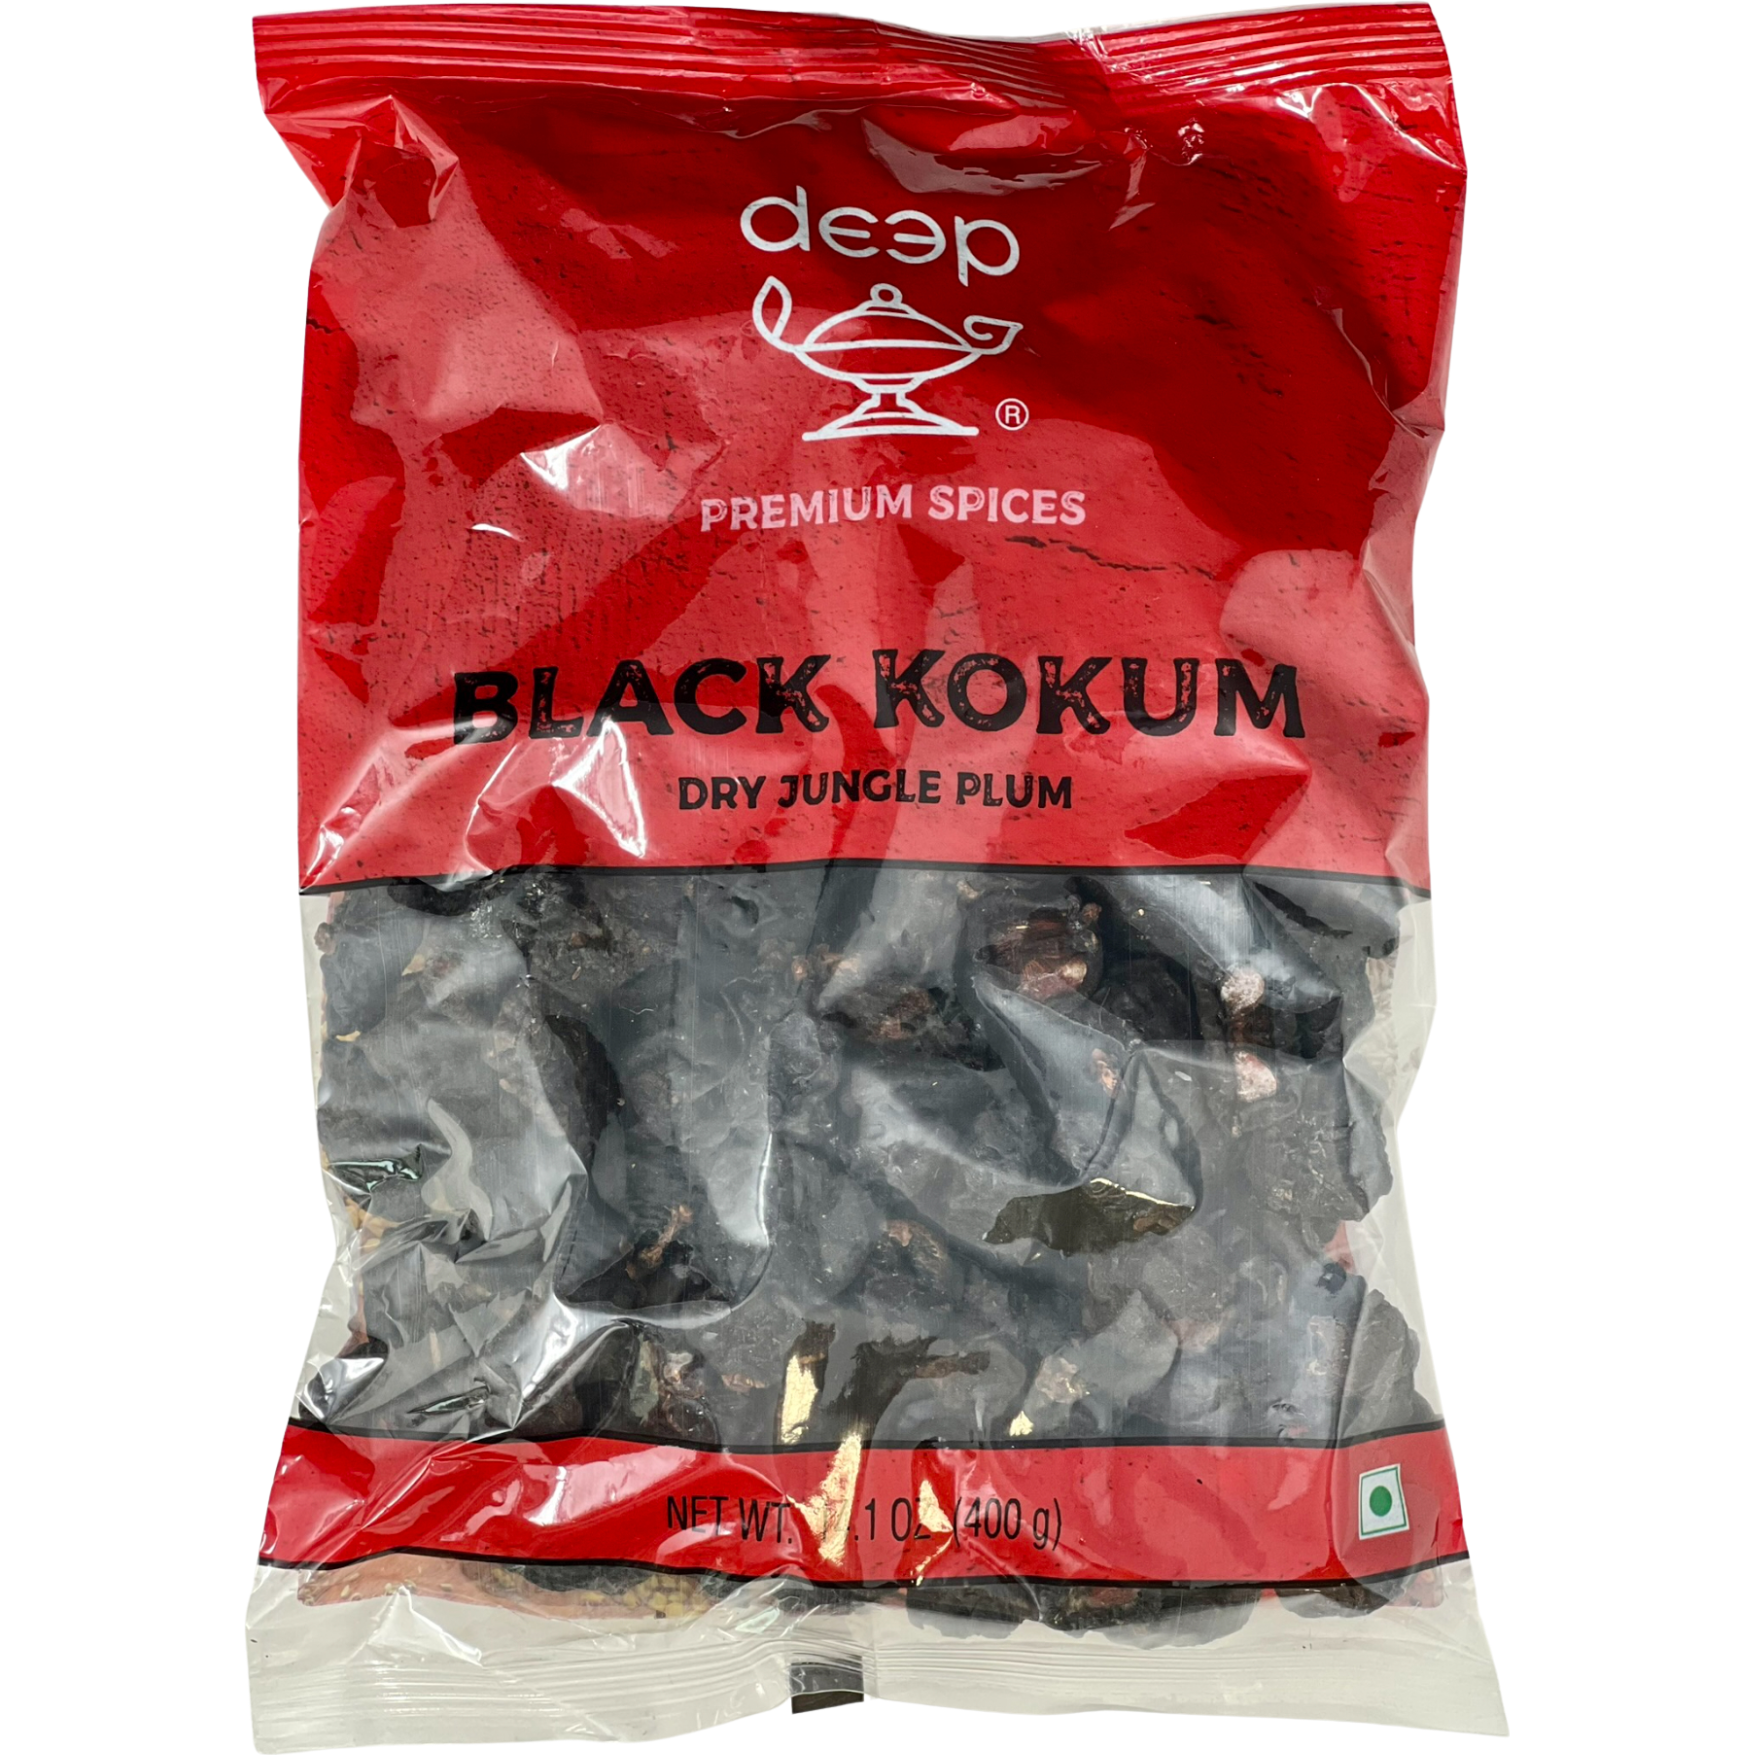 Deep Black Kokum Dry Jungle Plum - 400 Gm (14 Oz)